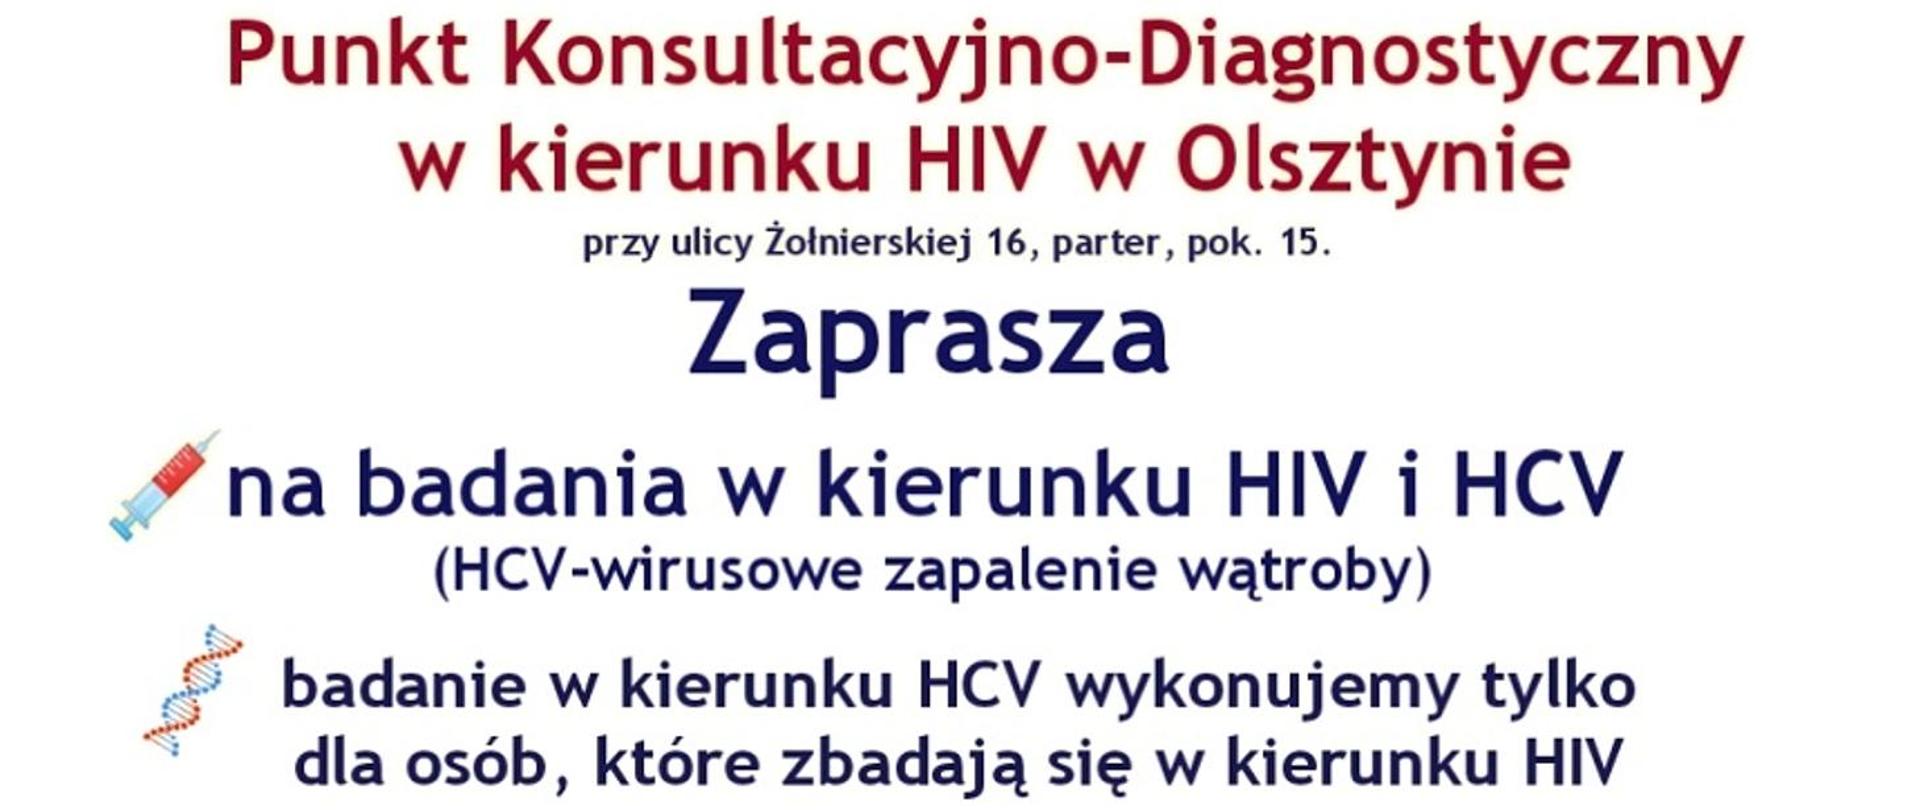 Punkt Konsultacyjno-Diagnostyczny w kierunku HIV i HCV